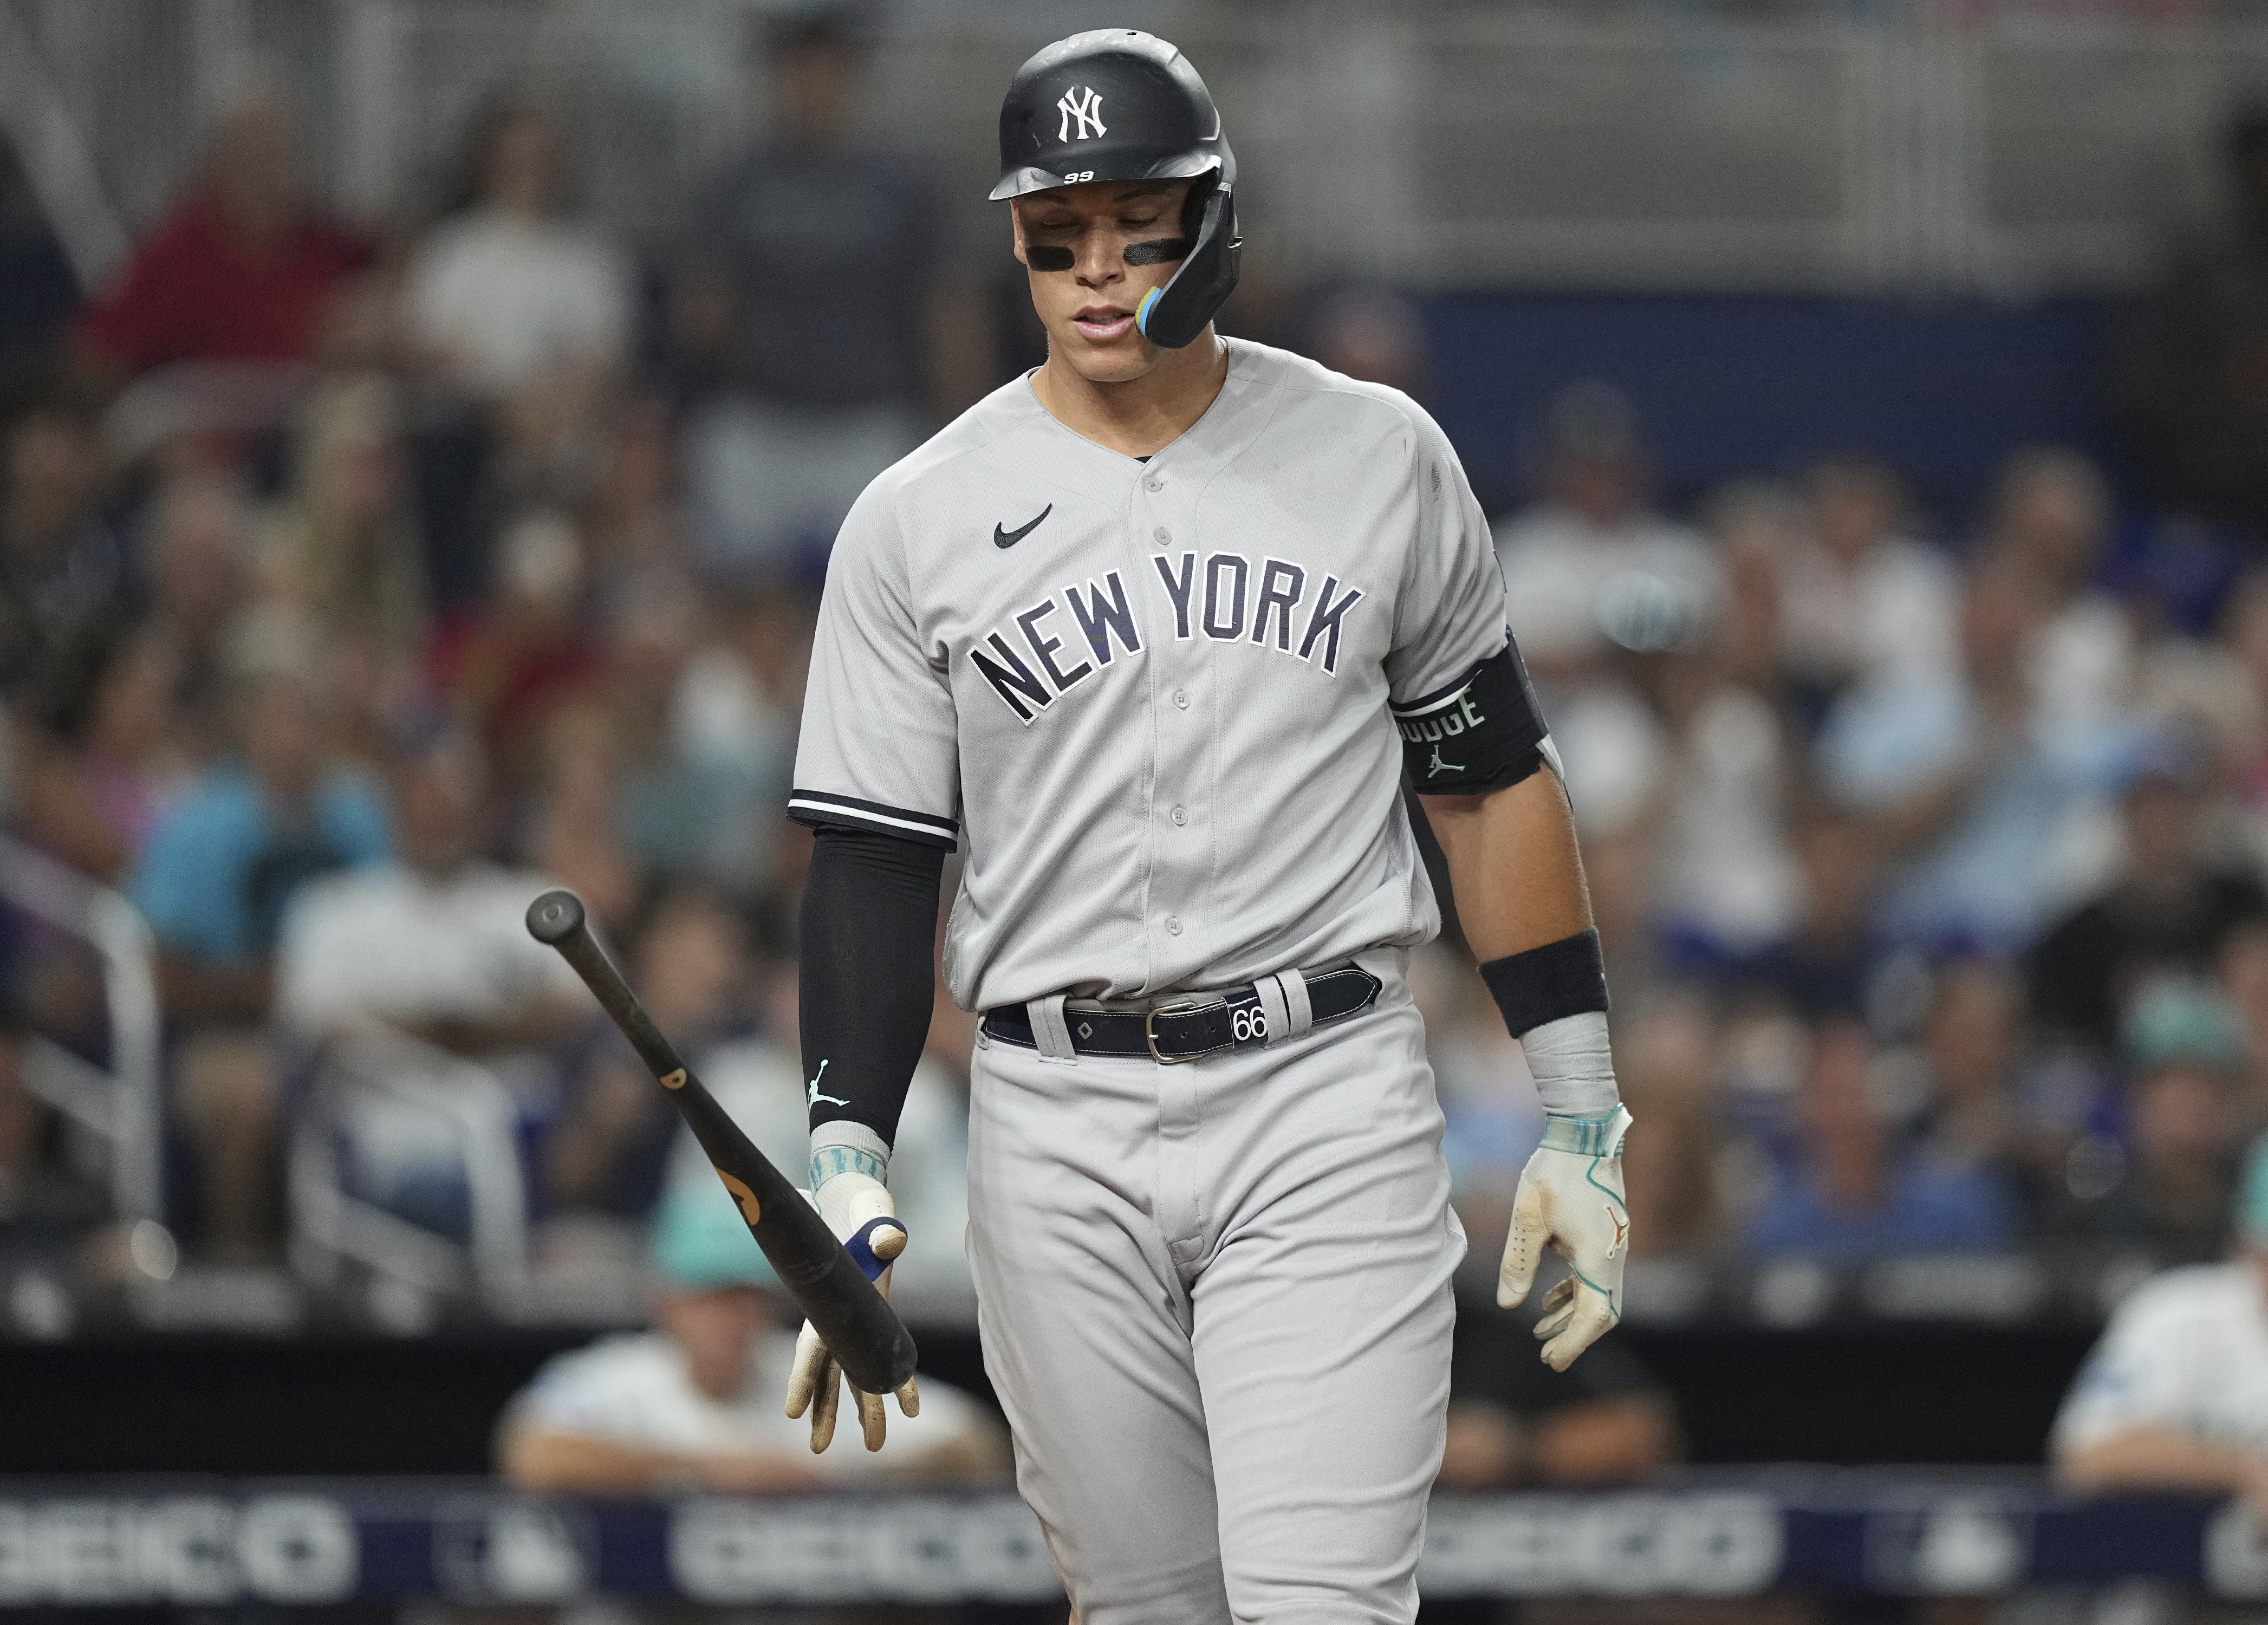 Yankees' Aaron Judge blasts 464-foot home run in win over Marlins